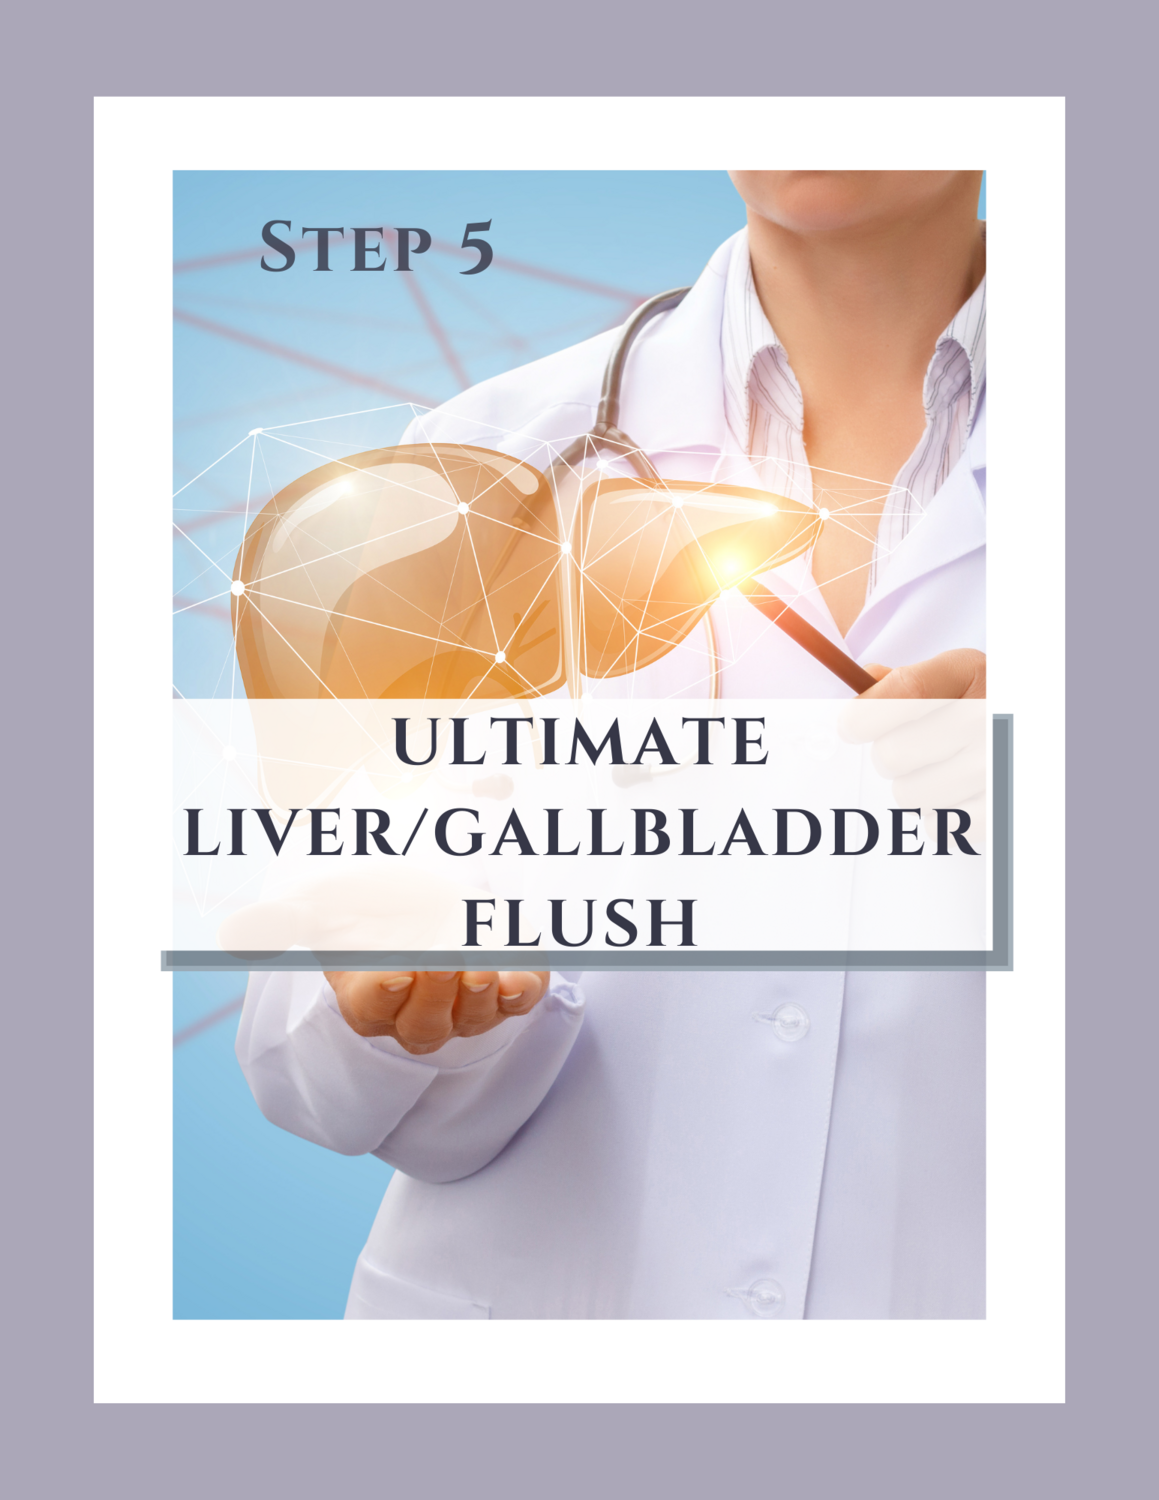 Step 5: Ultimate Liver/Gallbladder Flush